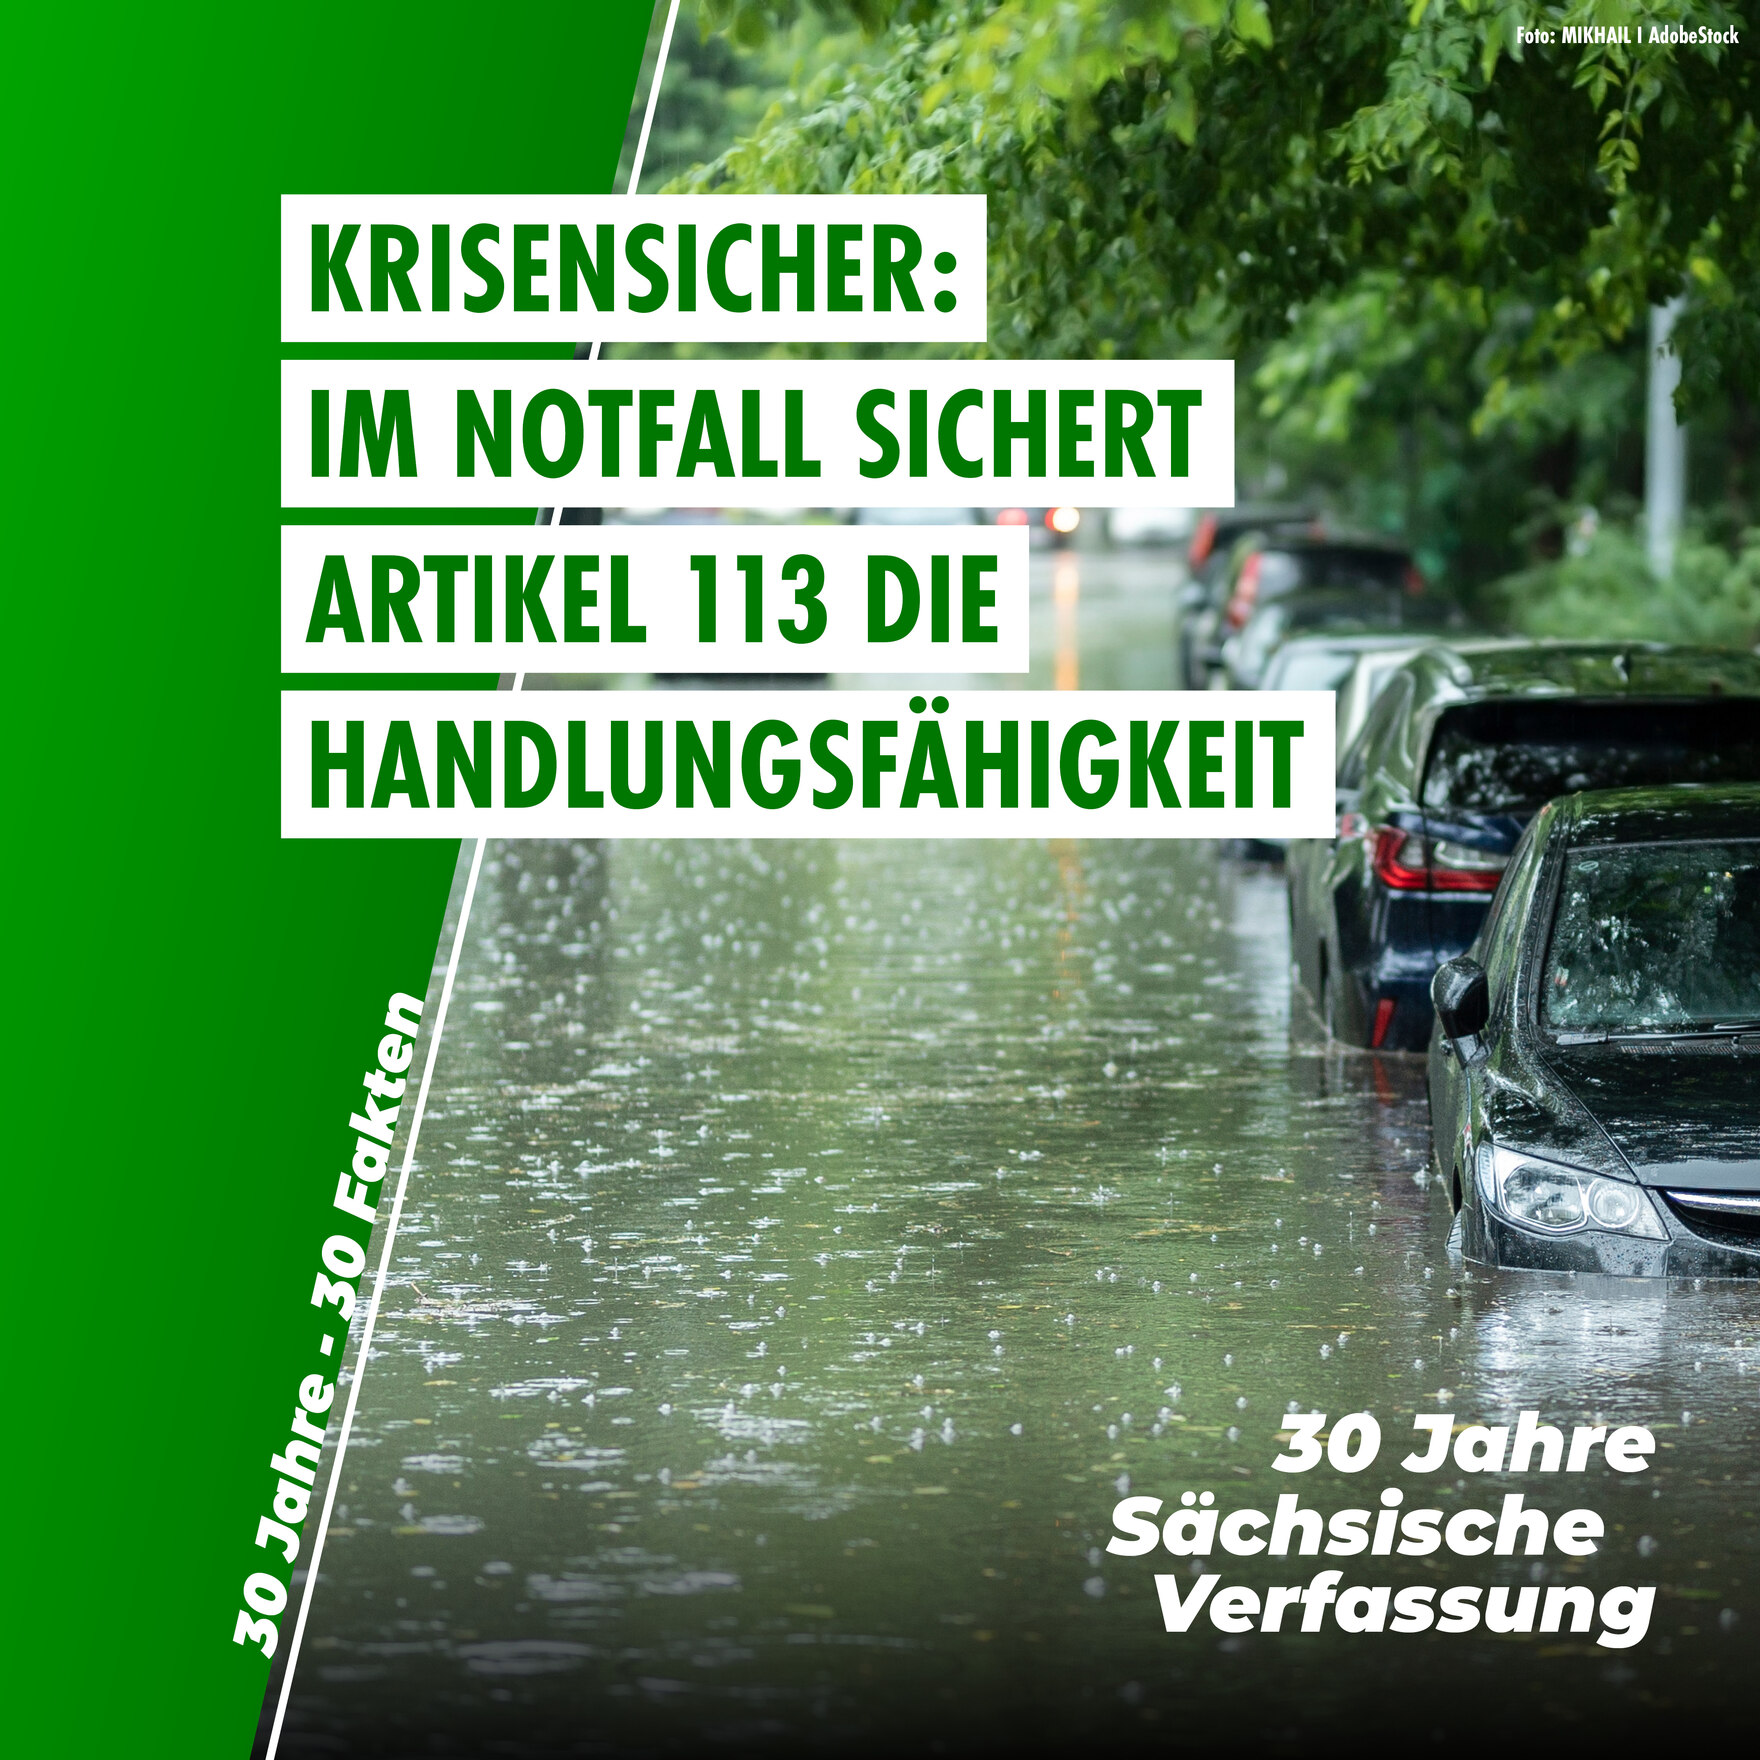 Mehrere Autos in einer Reihe stehen am Rand einer überfluteten Straße, das Wasser reicht fast bis über die Reifen. Auf dem Bild befindet sich die Aufschrift "Krisensicher: Im Notfall sichert Artikel 113 die Handlungsfähigkeit."